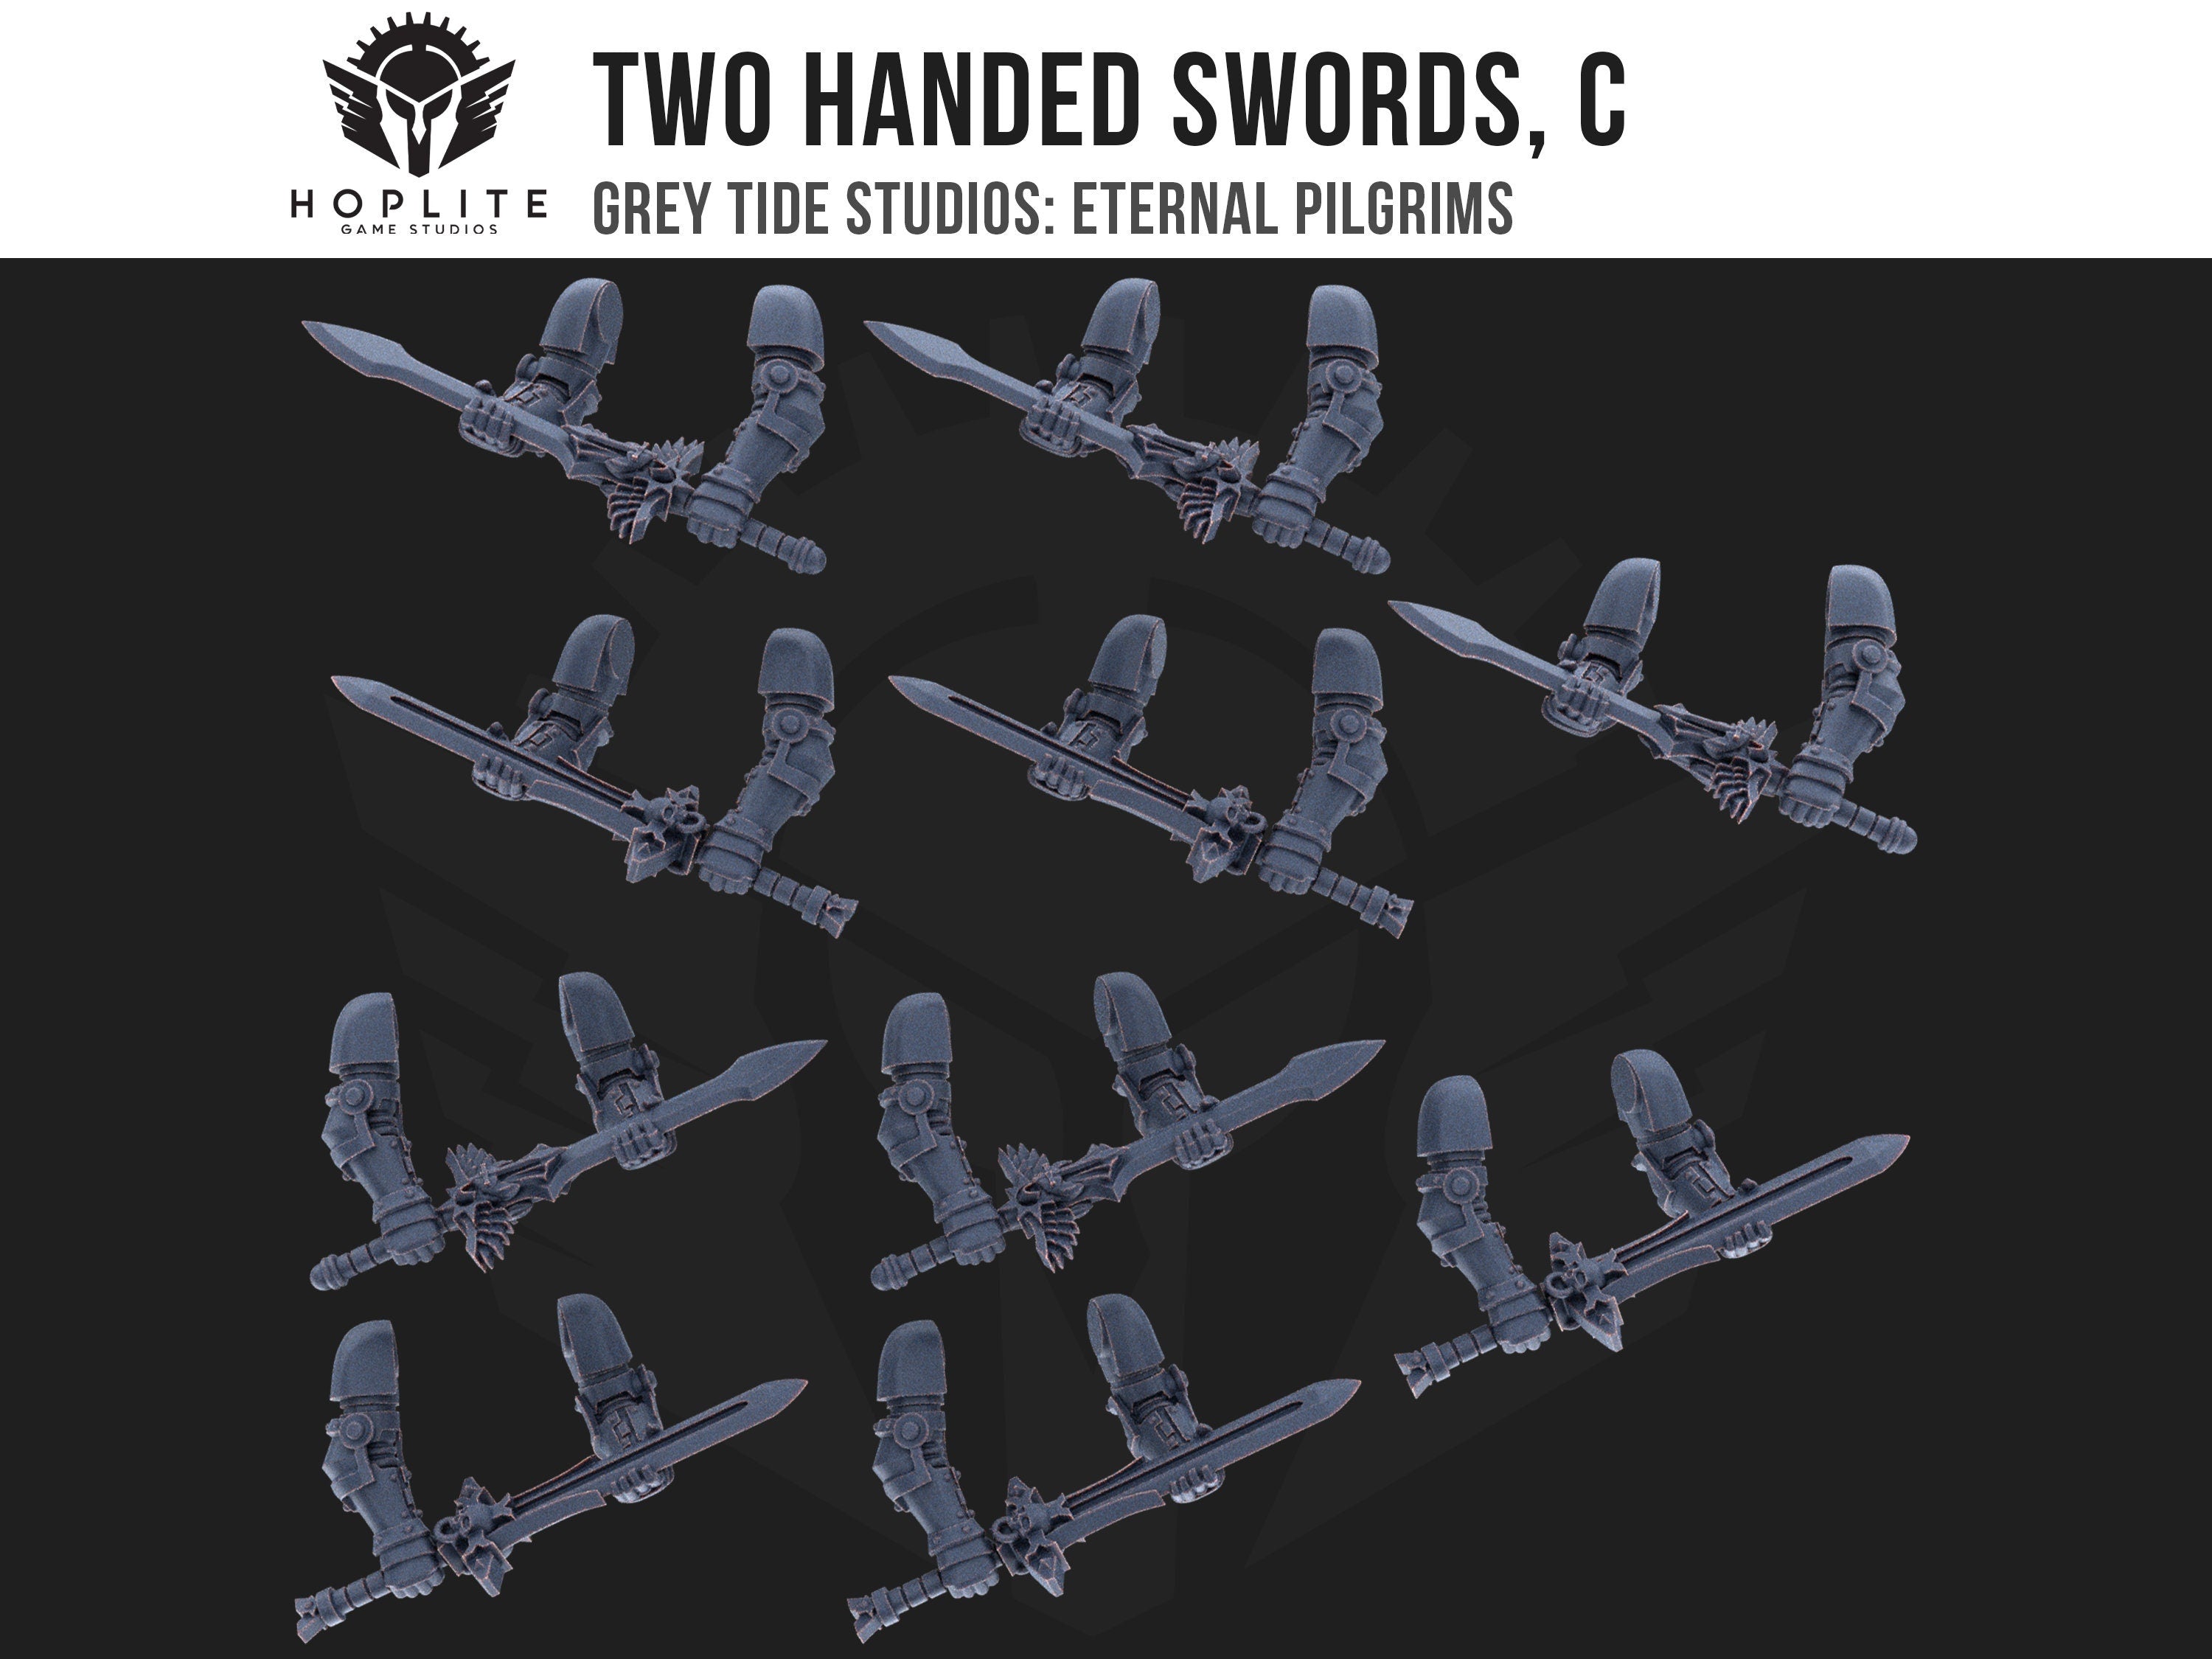 Espadas de dos manos, C (x10) | Estudios de marea gris | Peregrinos eternos | Piezas y brocas de conversión